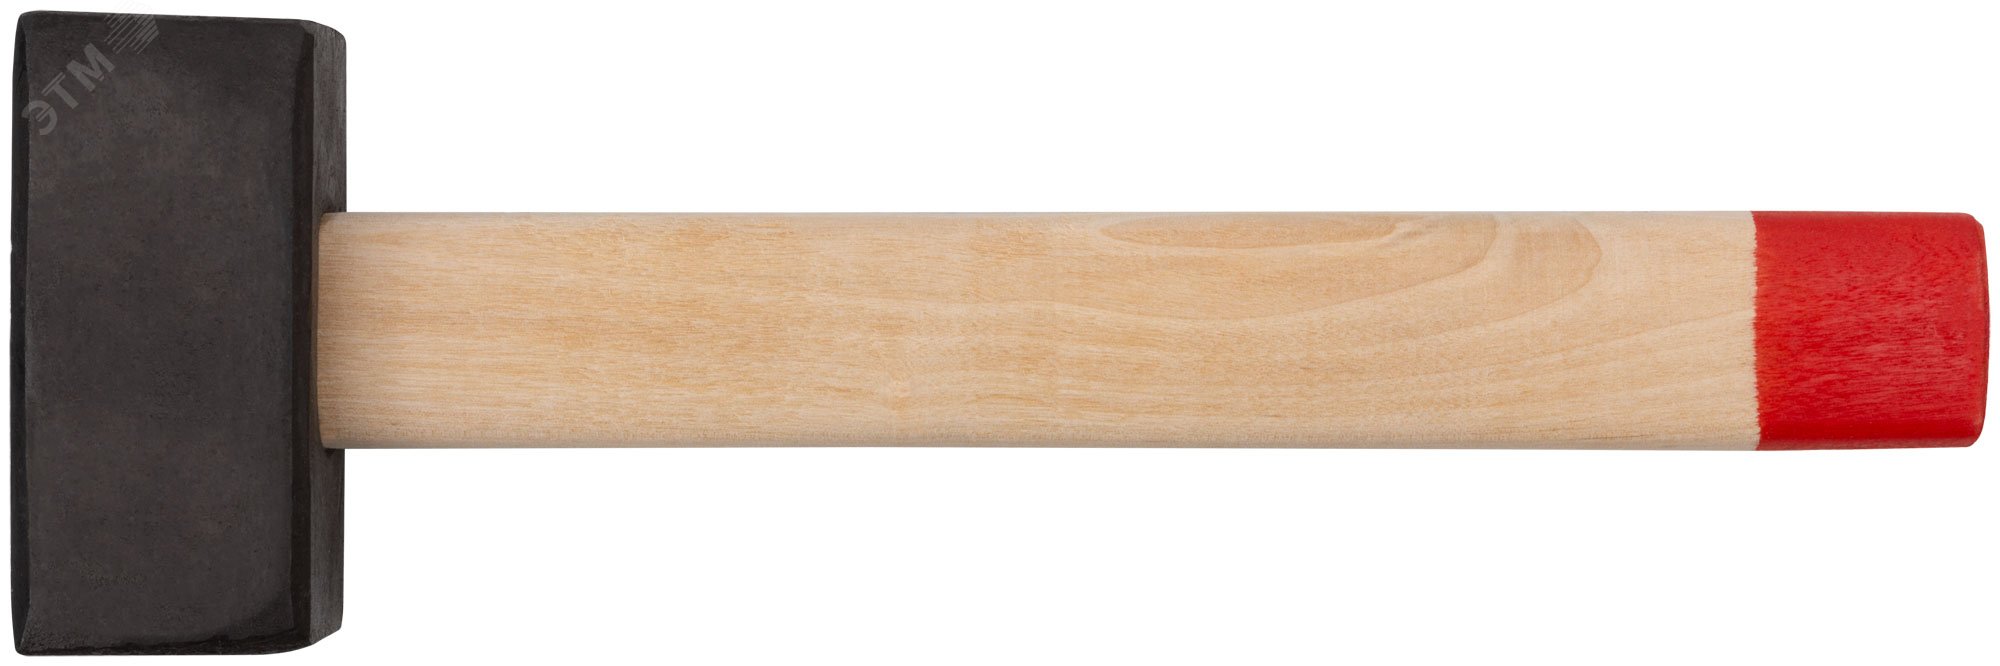 Кувалда кованая в сборе, деревянная ручка 4 кг 45024 КУРС РОС - превью